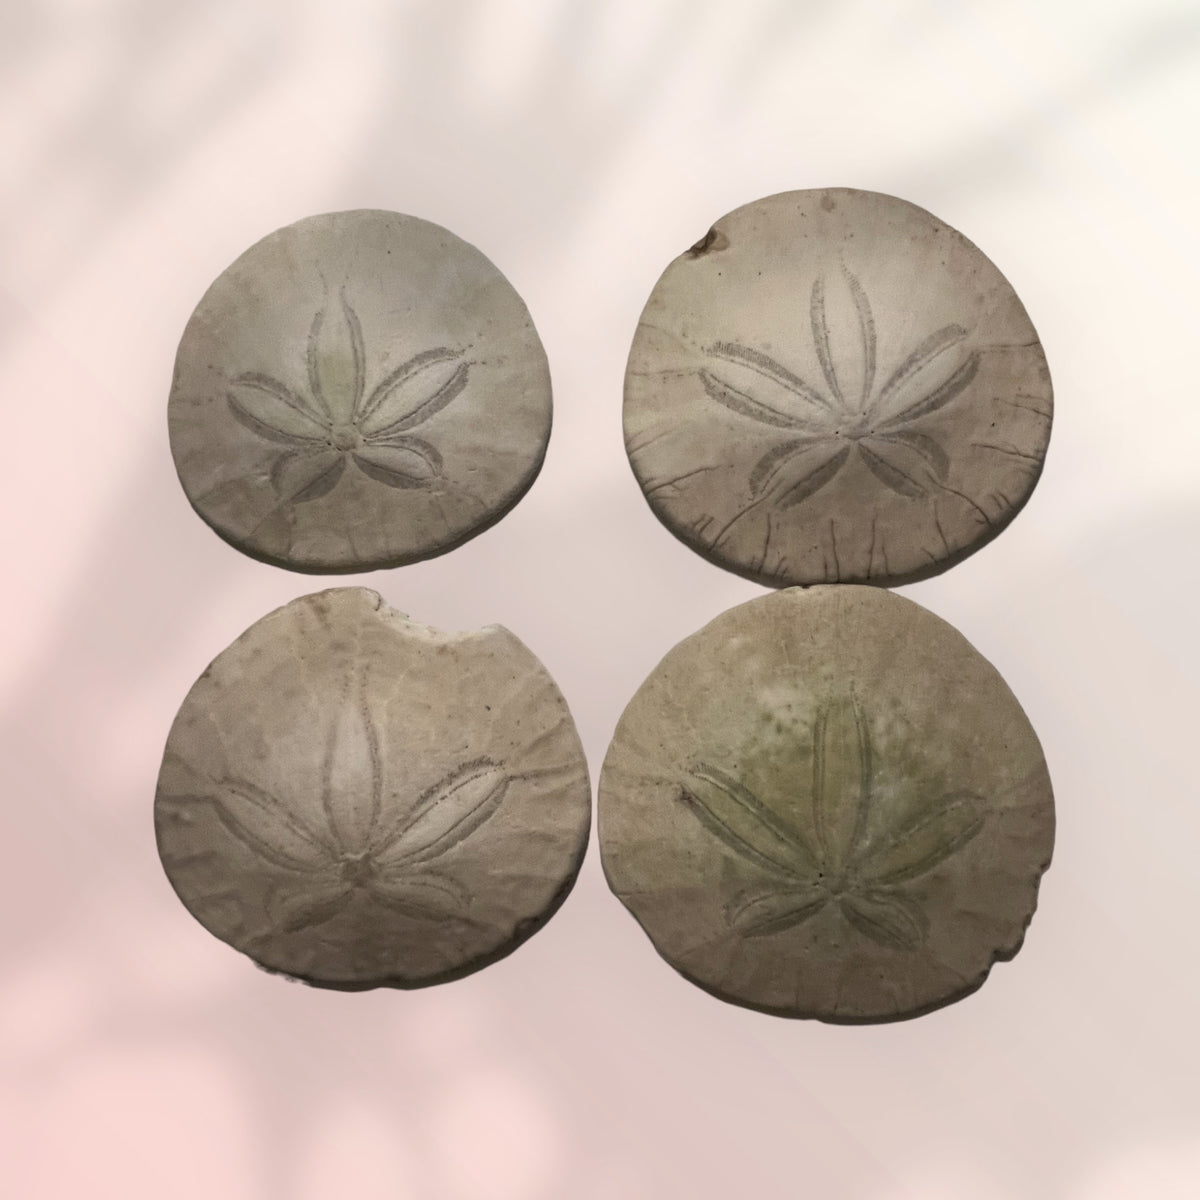 Ancient Sand Dollar / Sea Urchin